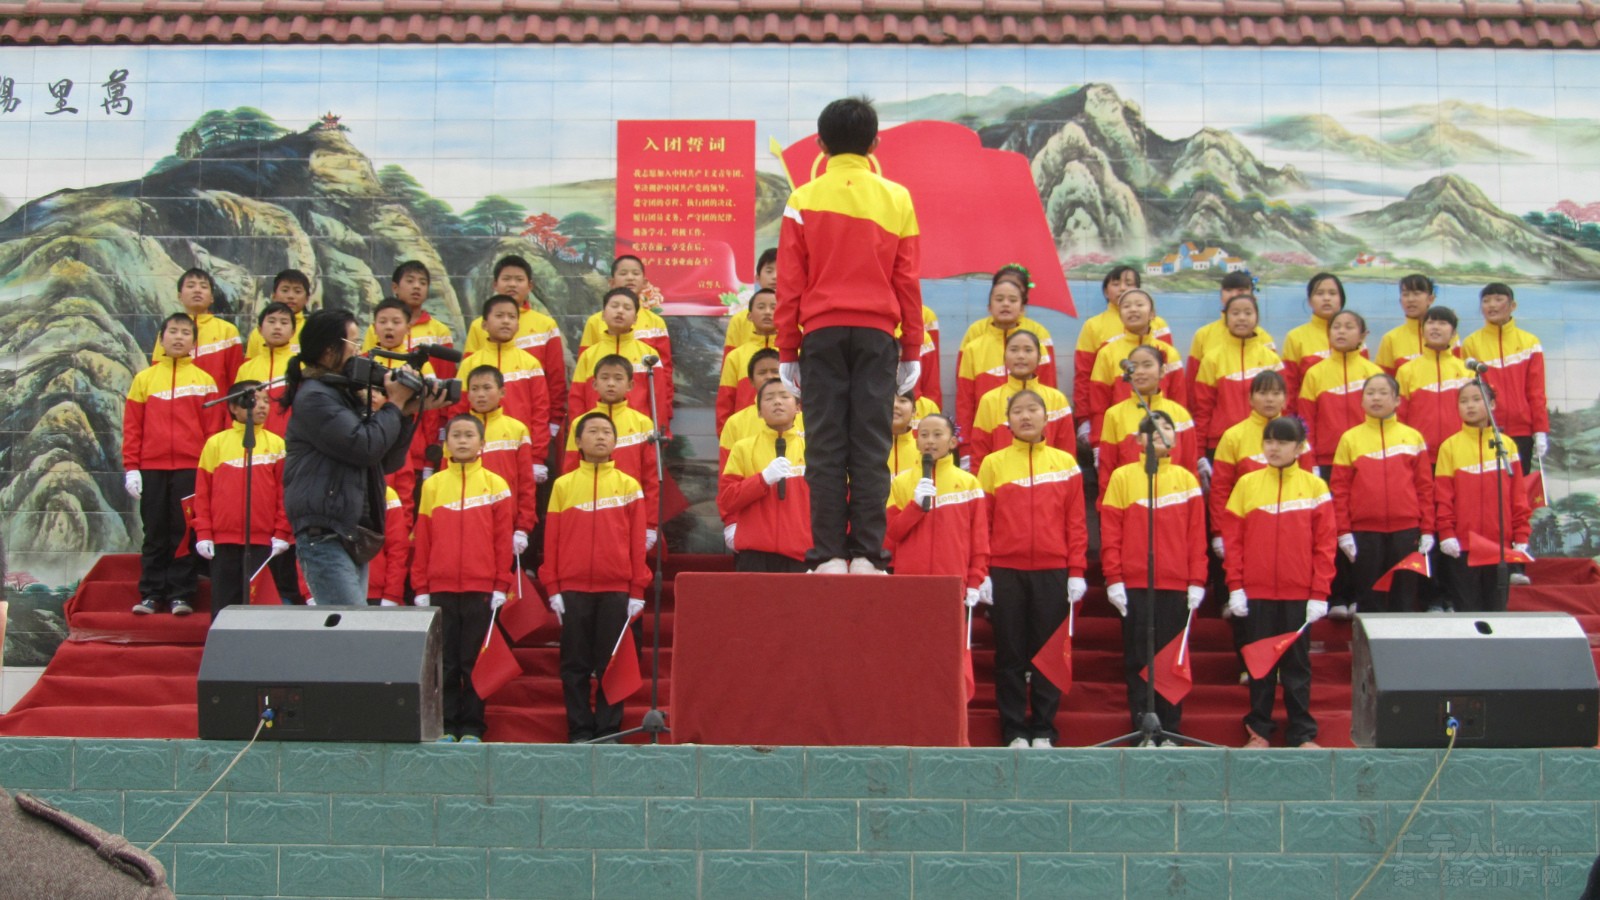 弘扬爱国激情,展示青春风采 ——剑阁县普安中学纪念129歌咏比赛